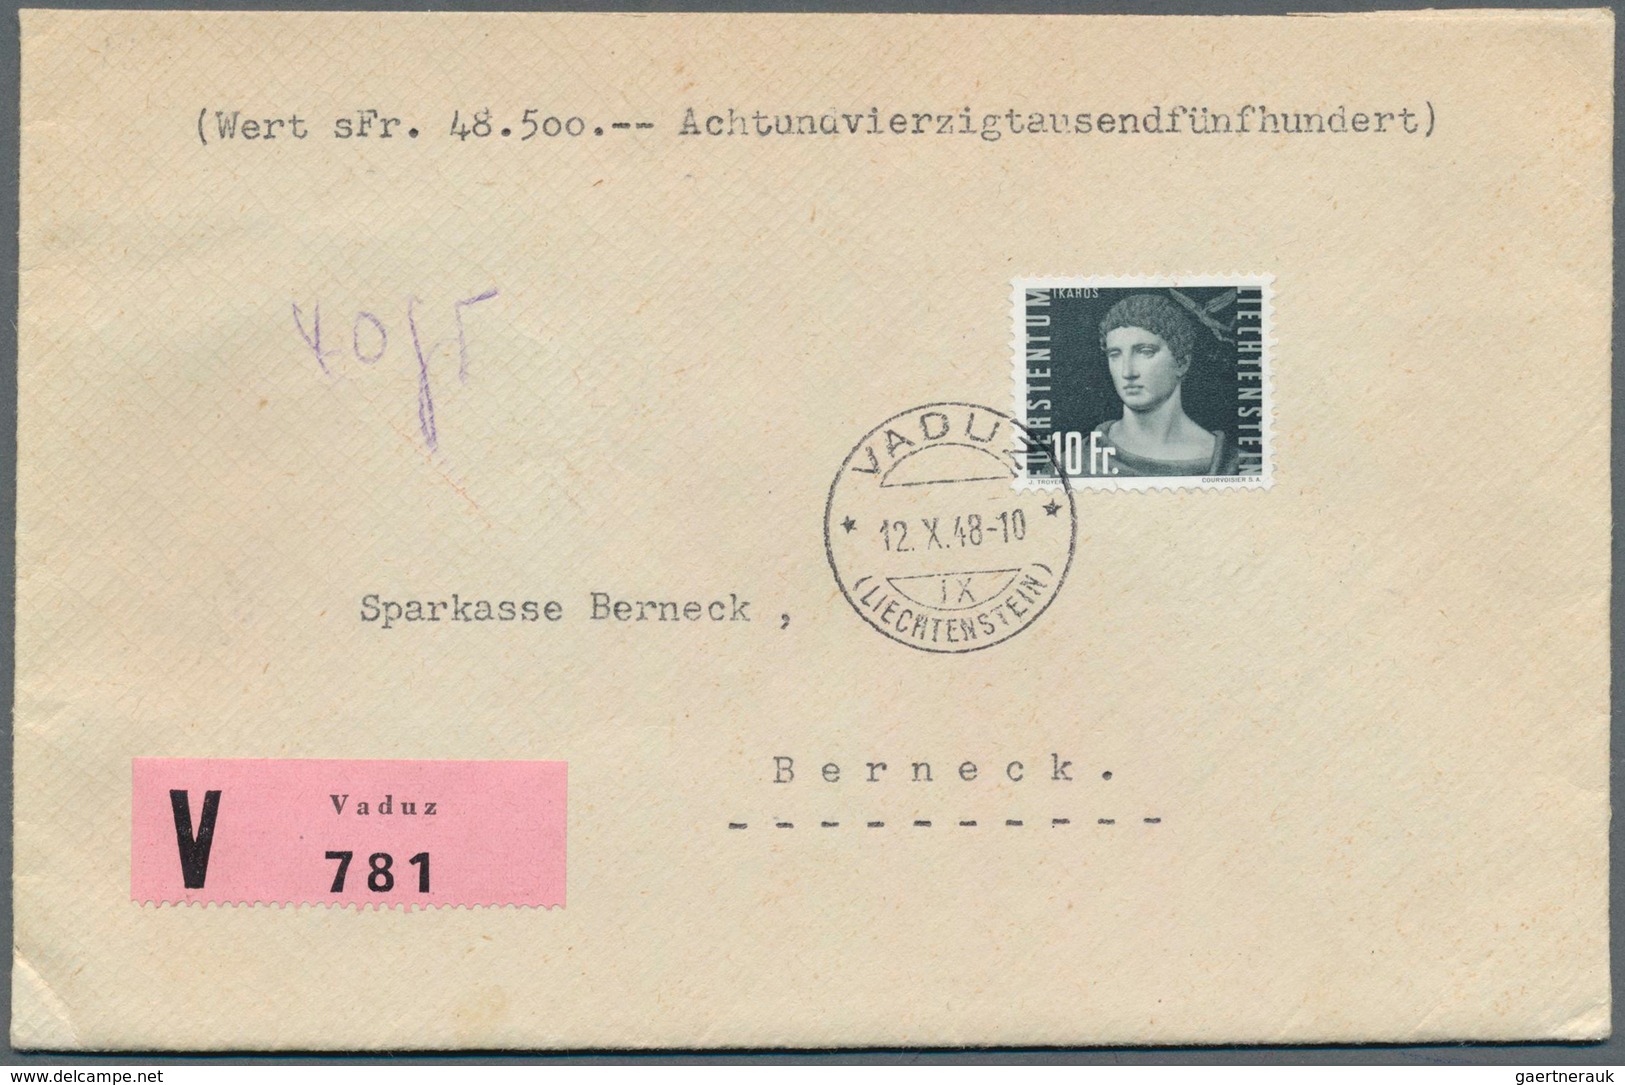 27177 Liechtenstein: 1900/1970 (ca.), vielseitige Partie von ca. 290 Briefen/Karten/Ganzsachen/FDCs/Maximu